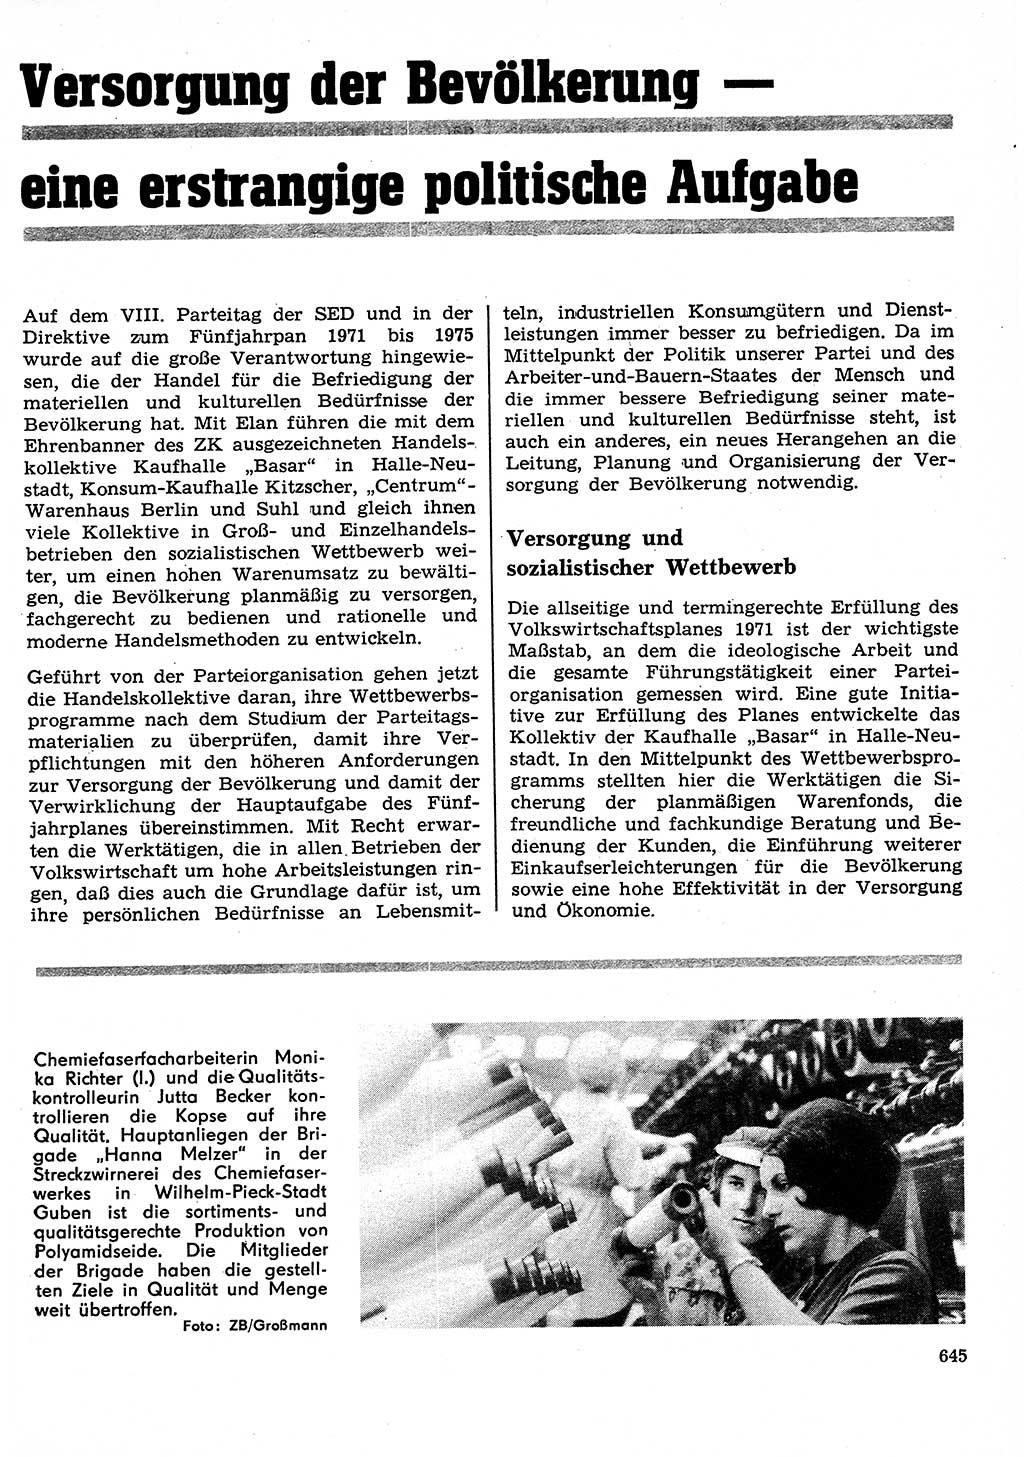 Neuer Weg (NW), Organ des Zentralkomitees (ZK) der SED (Sozialistische Einheitspartei Deutschlands) für Fragen des Parteilebens, 26. Jahrgang [Deutsche Demokratische Republik (DDR)] 1971, Seite 645 (NW ZK SED DDR 1971, S. 645)